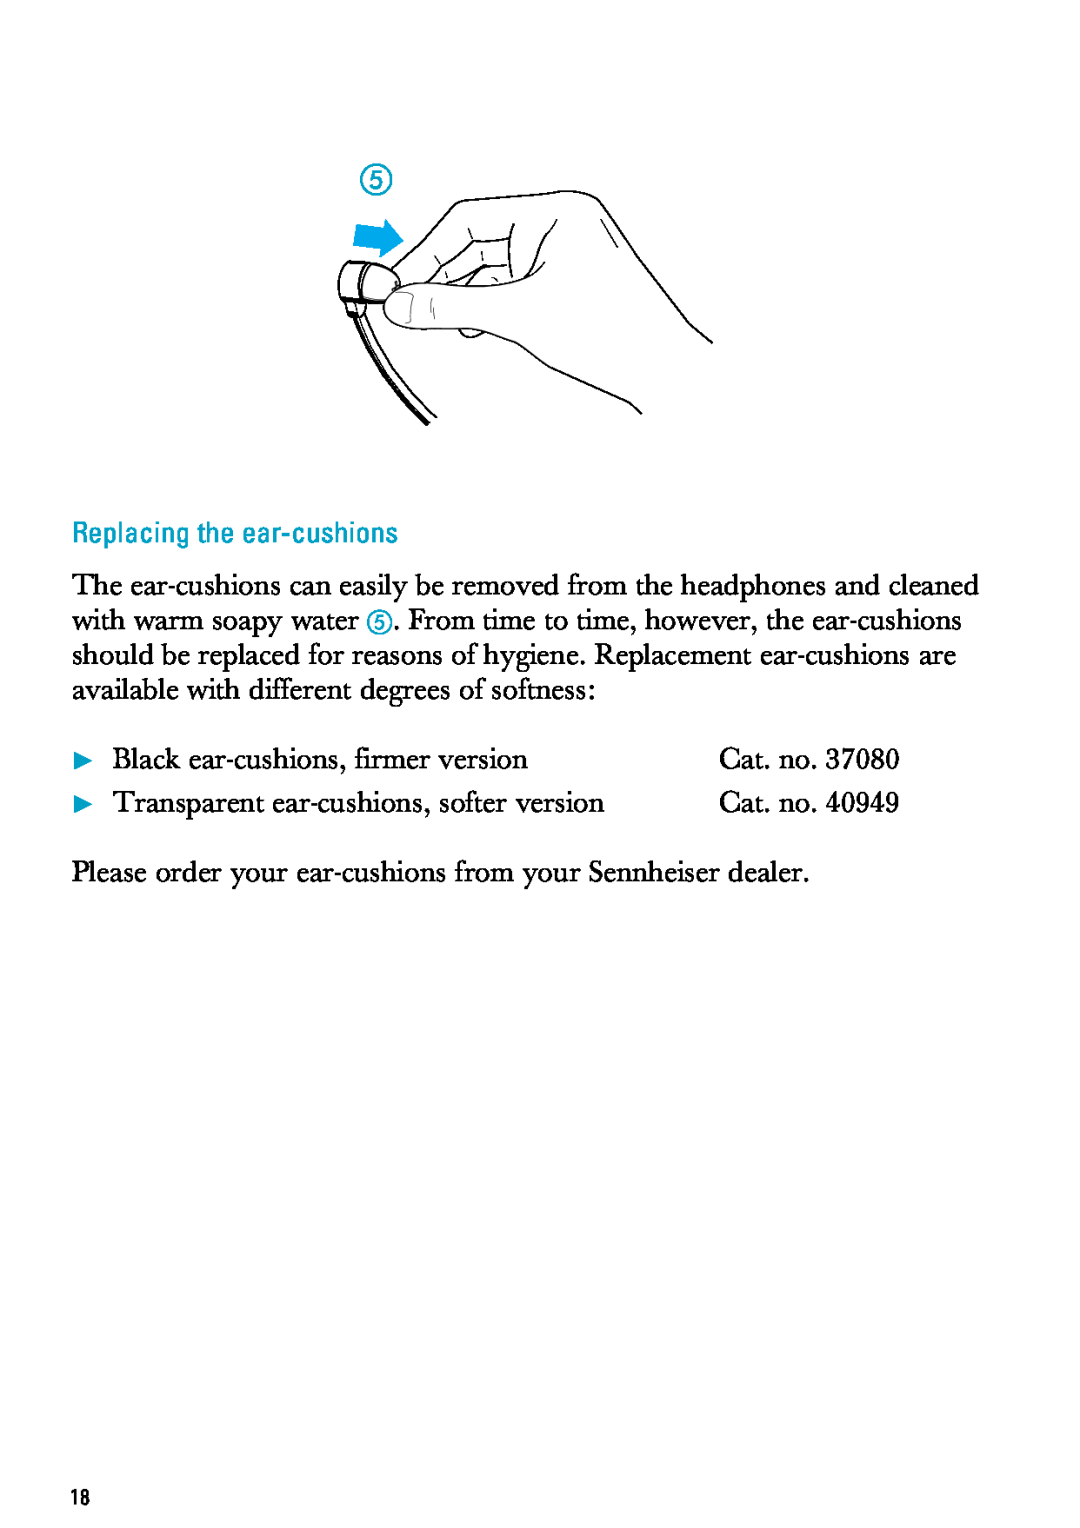 Sennheiser MX300, PC 150 manual Replacing the ear-cushions, Black ear-cushions,firmer version 